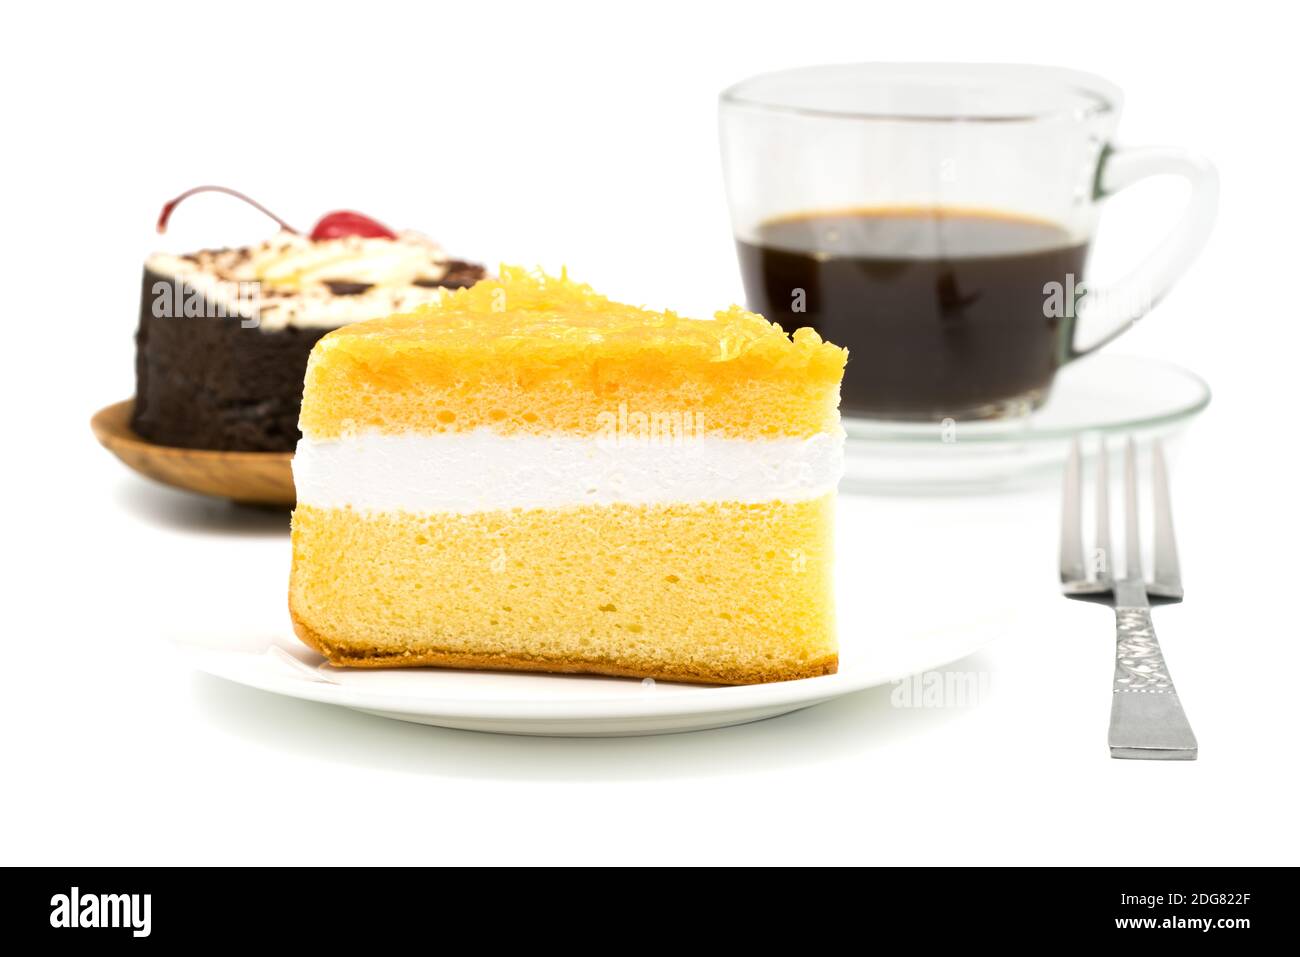 Gâteau en mousseline garni de thong fai dans une assiette blanche avec gâteau au chocolat et une tasse de café noir Banque D'Images